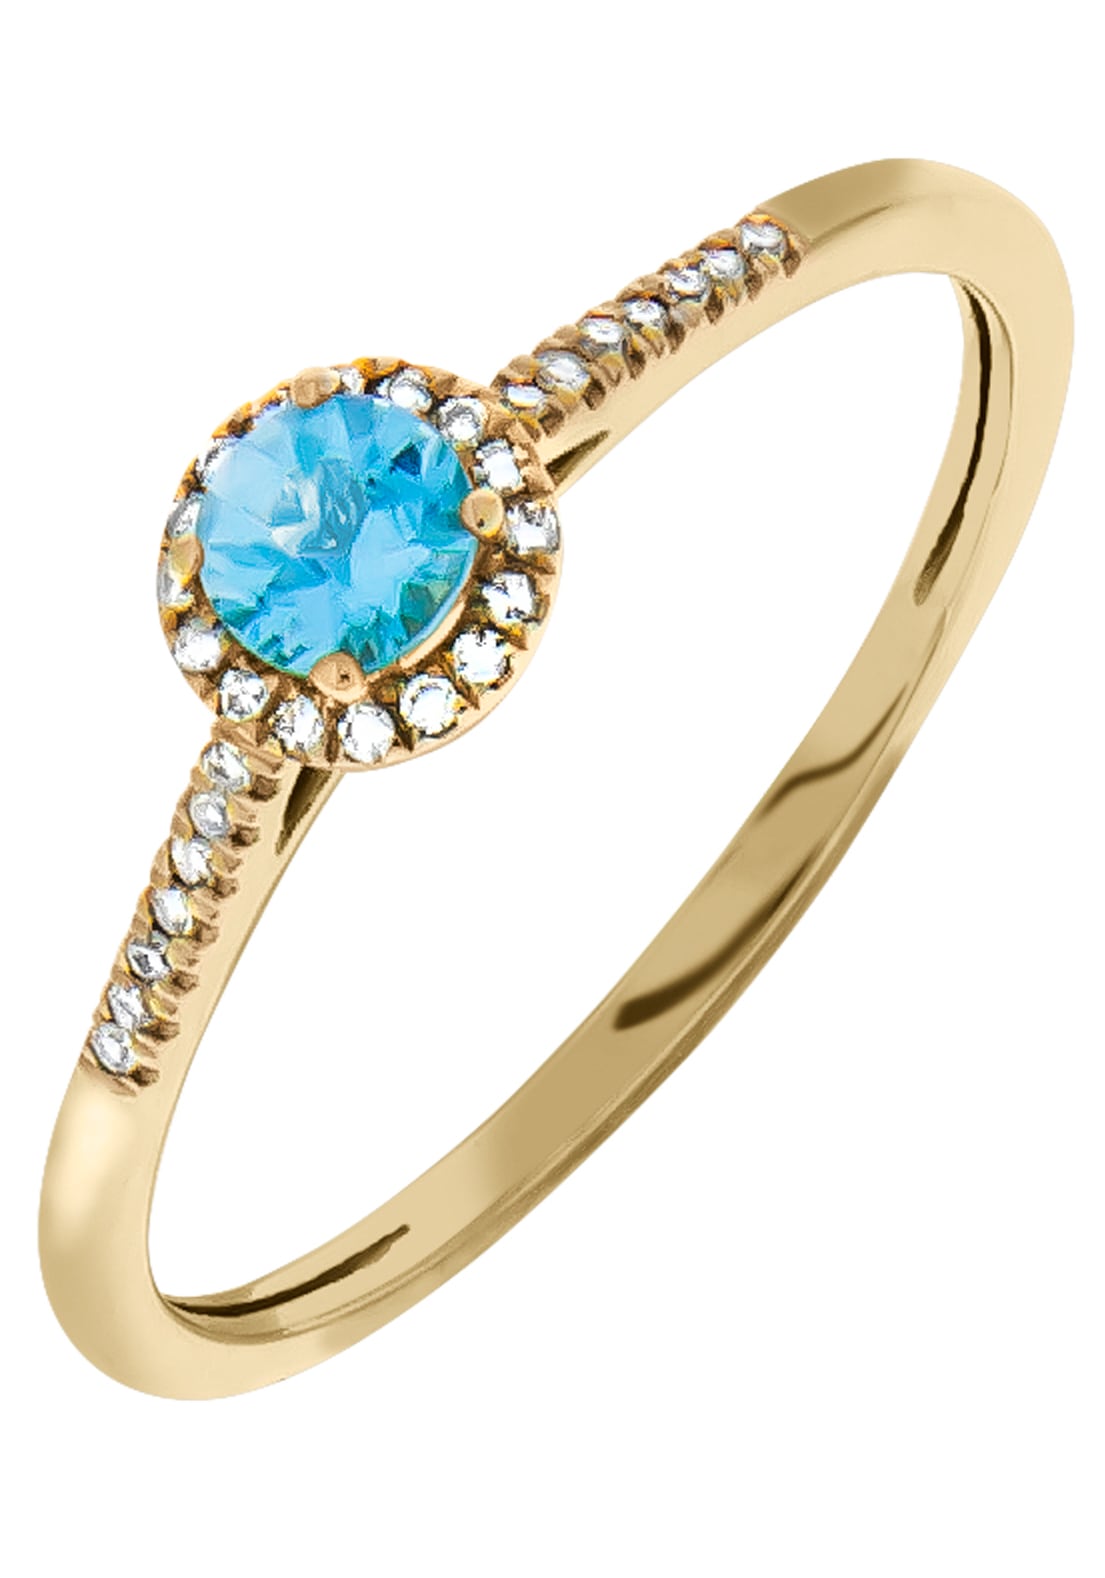 Blautopas mit bequem Firetti (behandelt) kaufen Diamantring,